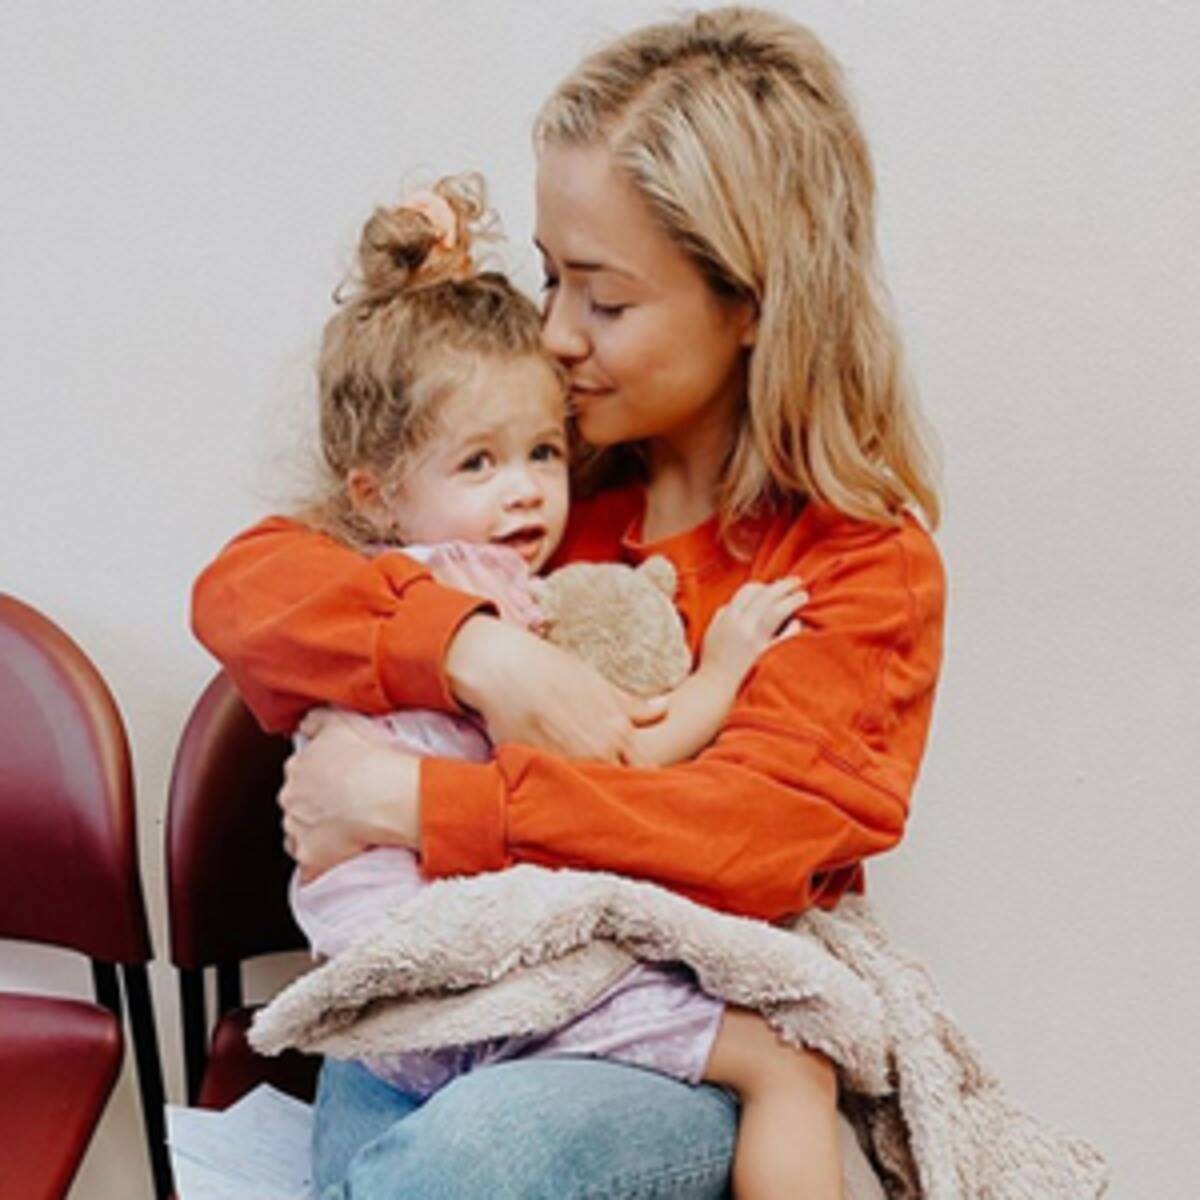 Ashley Stock e a sua filha que morreu aos 3 anos (Foto: Reprodução/Instagram)